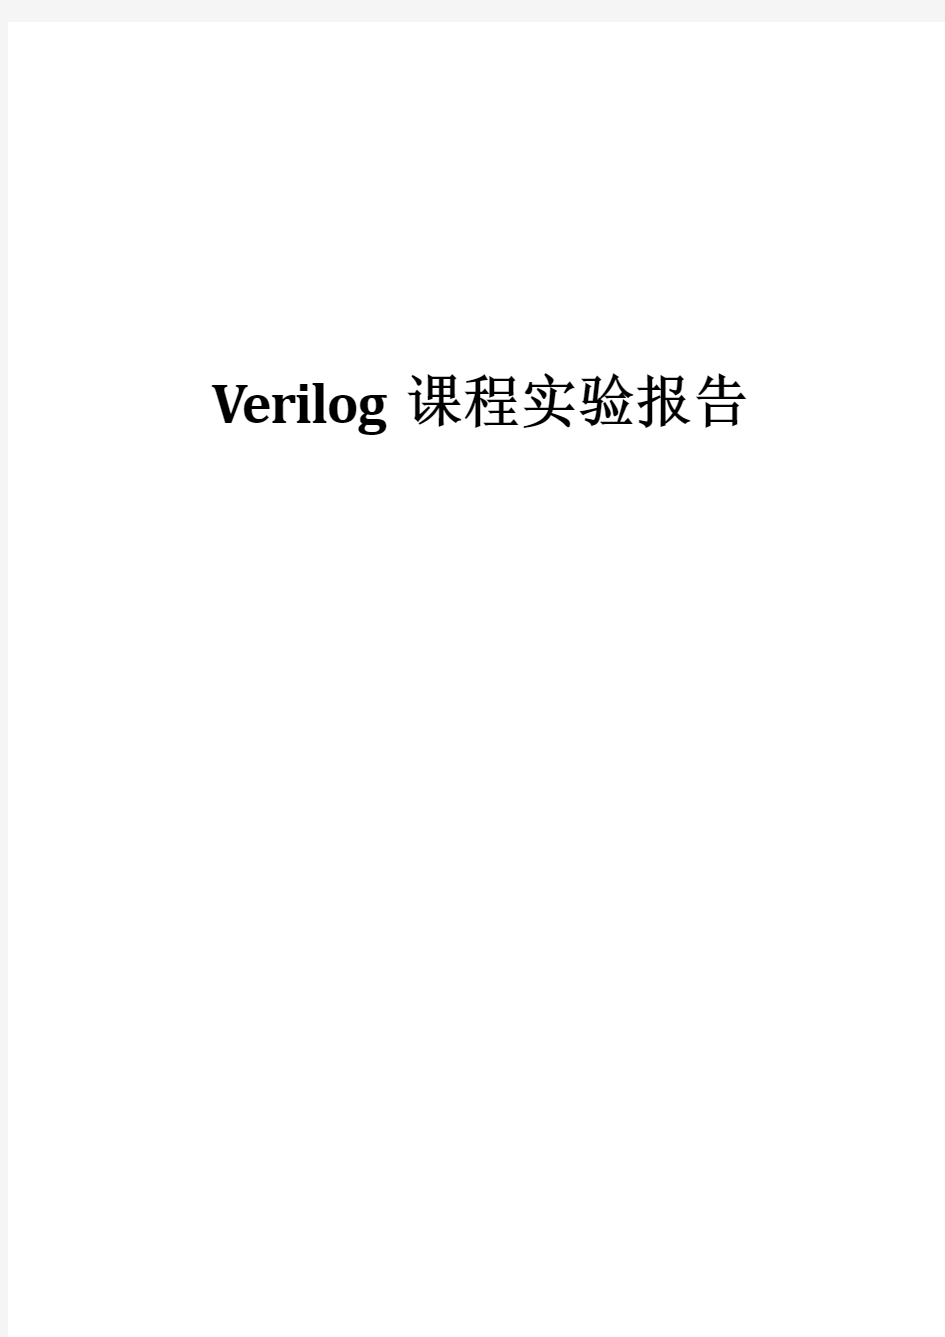 用verilog编写16位加法器乘法器自动售货机